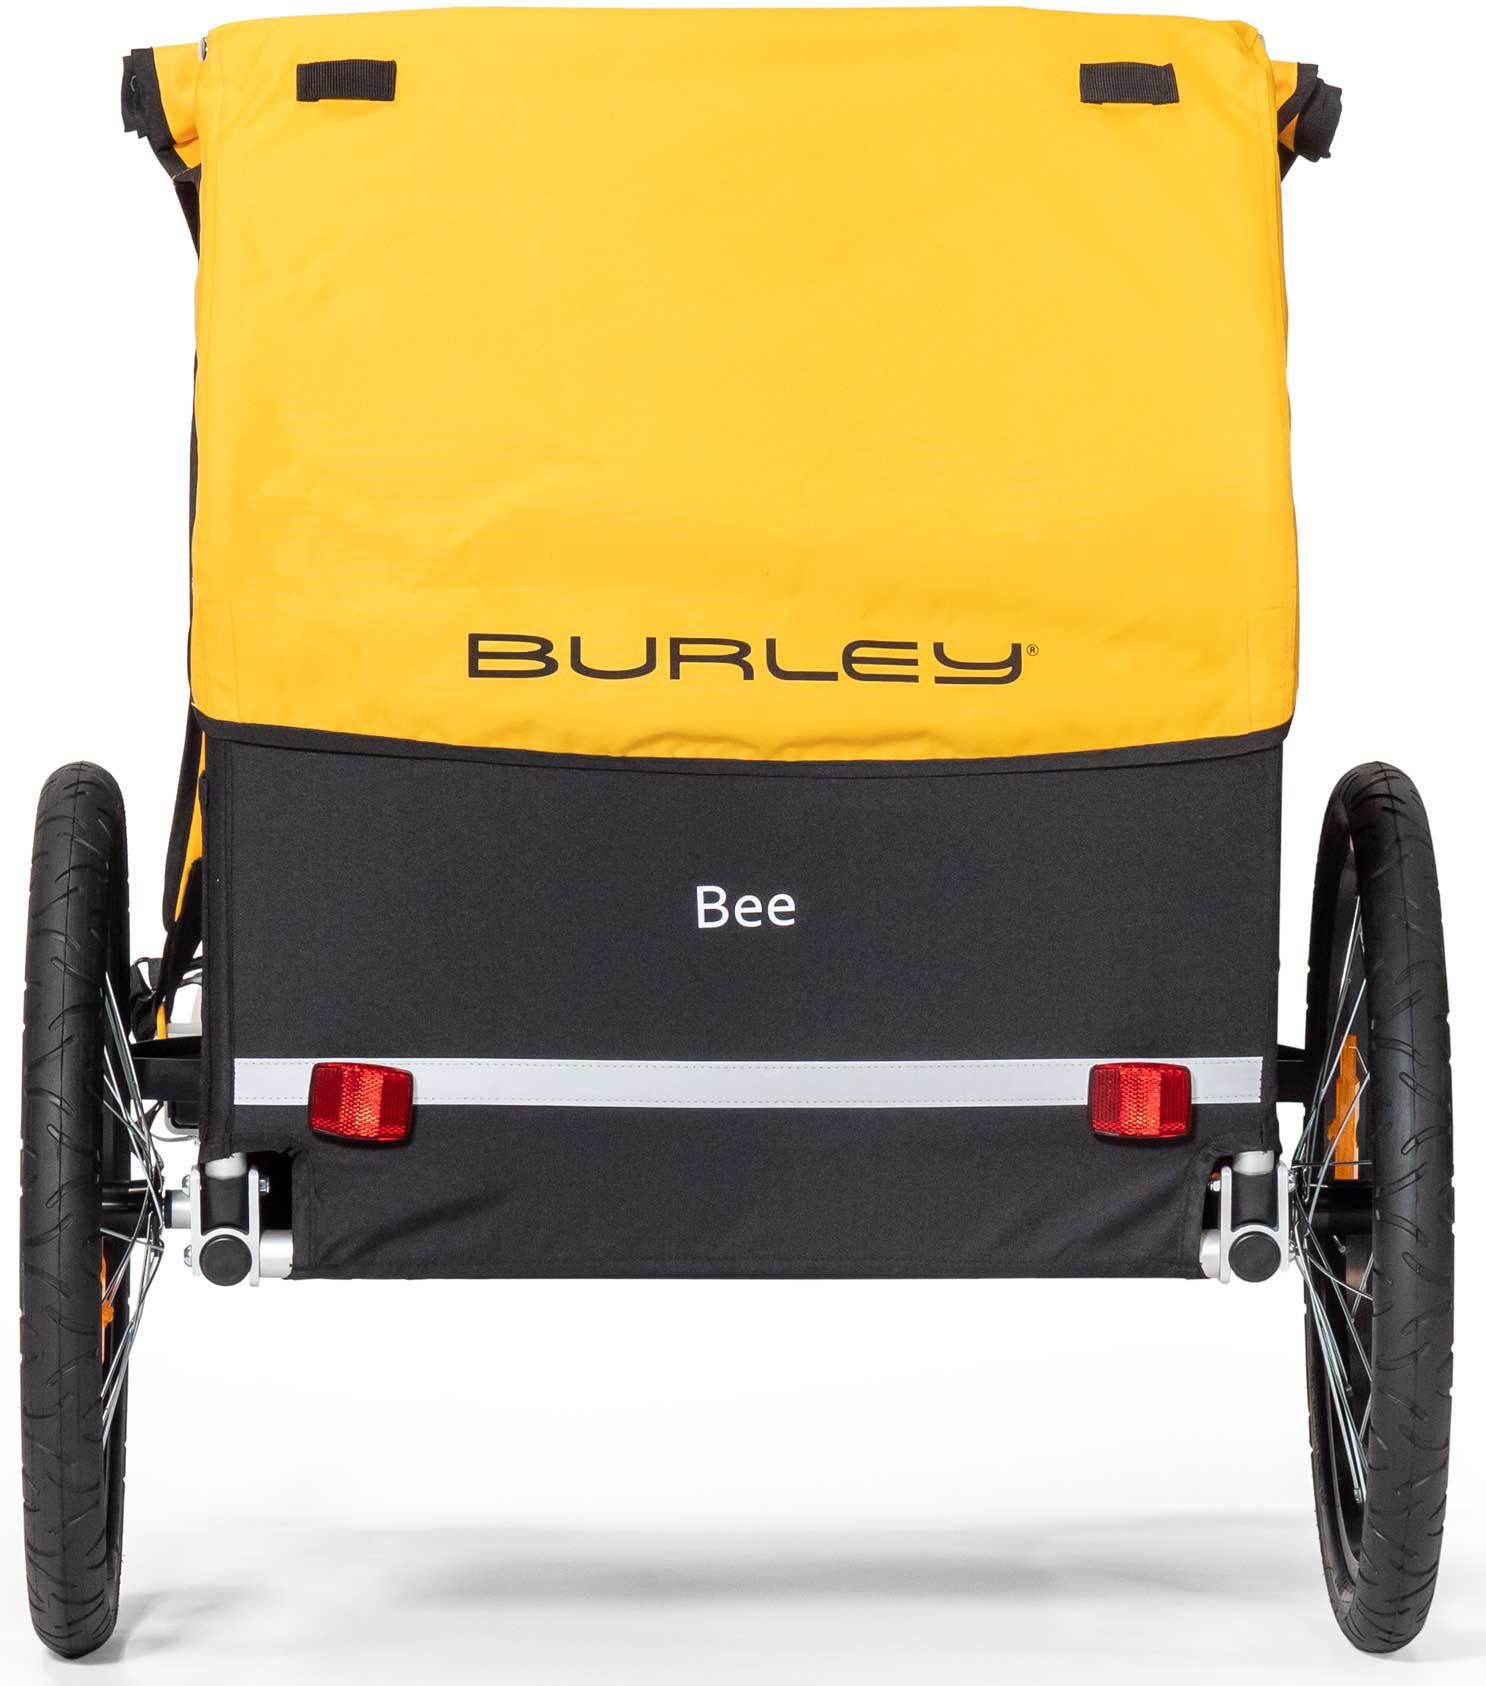 buy burley bee bike trailer